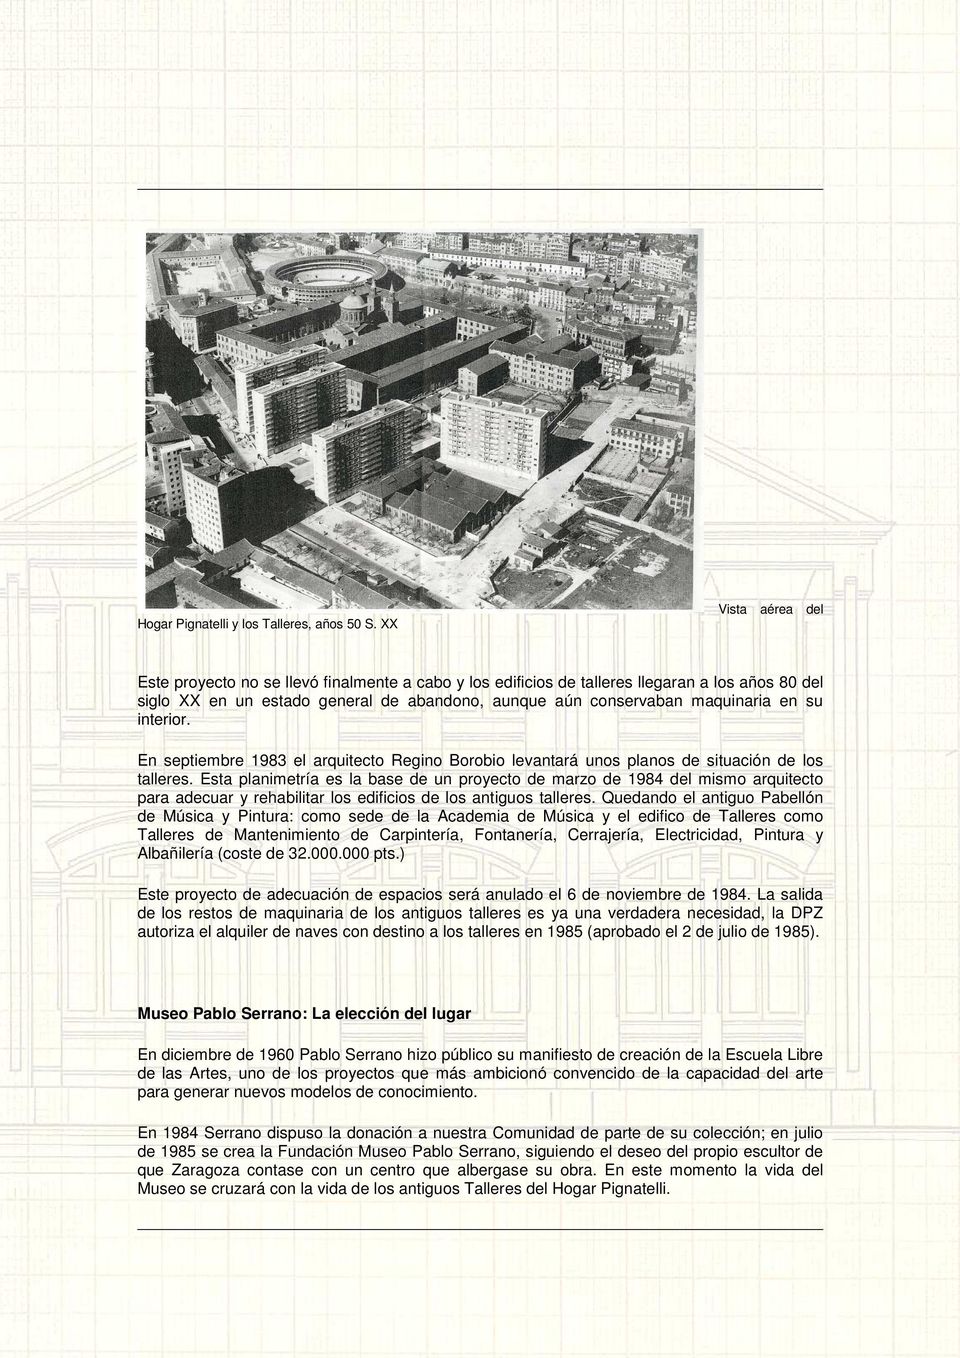 su interior. En septiembre 1983 el arquitecto Regino Borobio levantará unos planos de situación de los talleres.